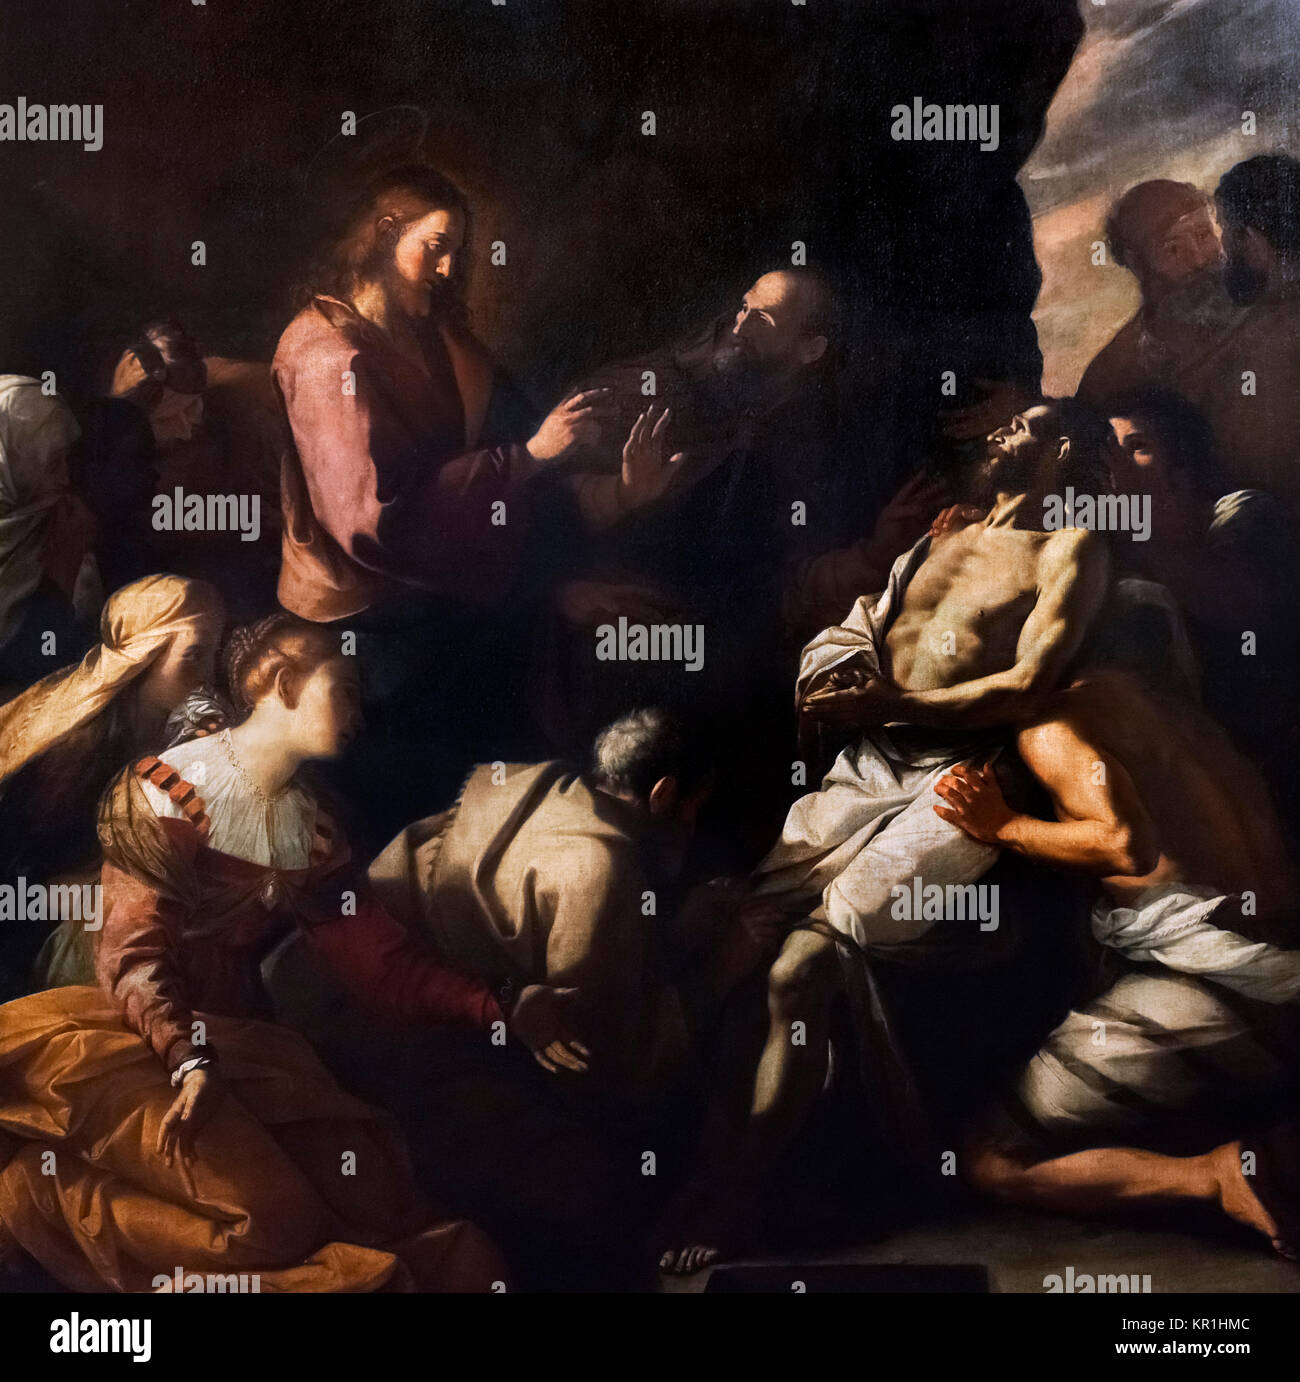 The Raising of Lazarus  by Mattia Preti (1613-1699), oil on canvas, c.1630-40. Stock Photo